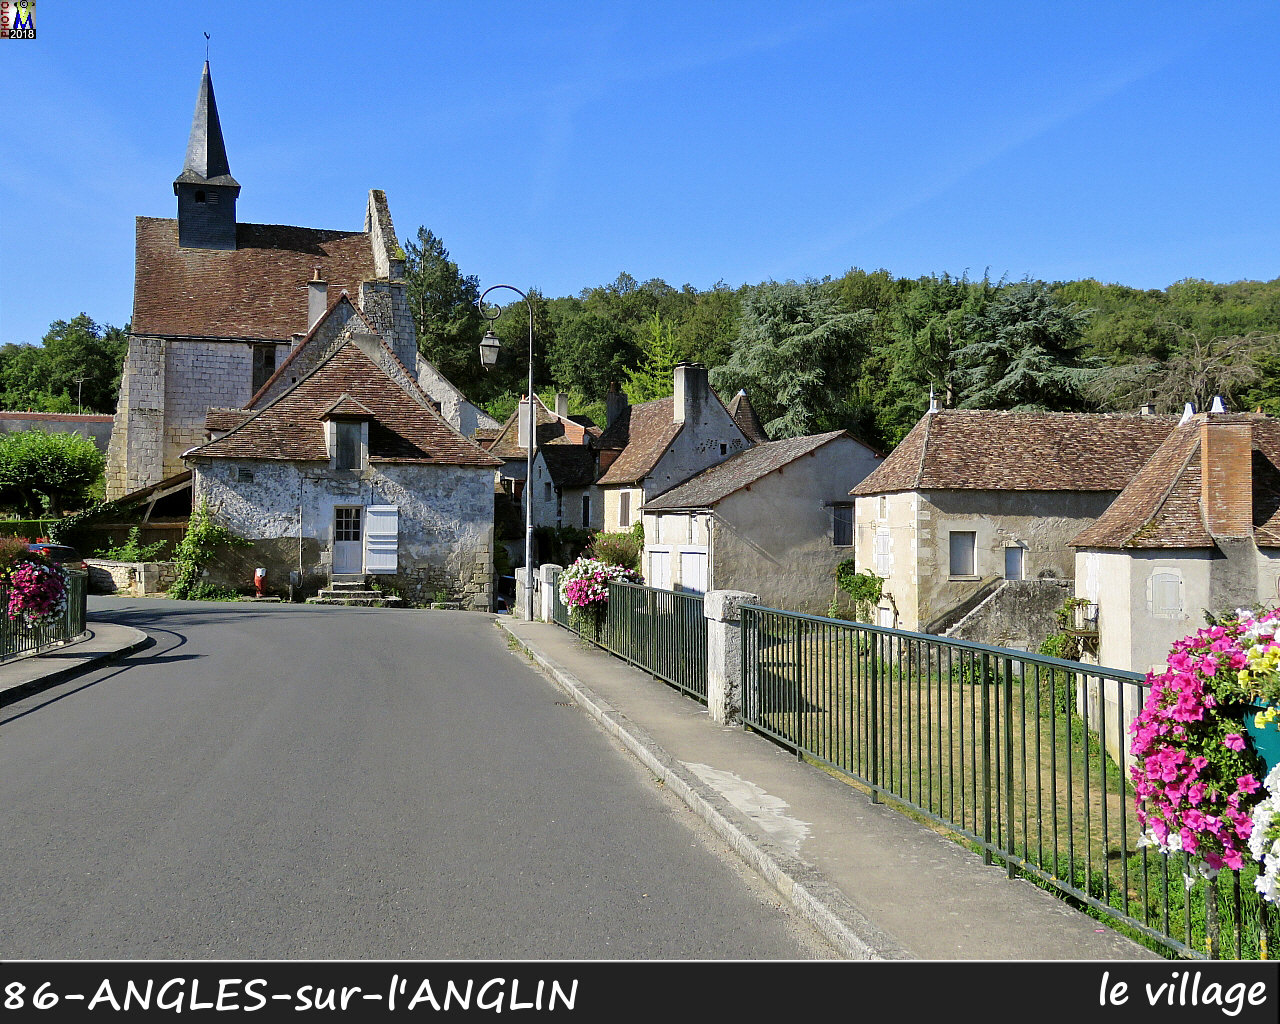 86ANGLES-S-ANGLIN_village_1016.jpg